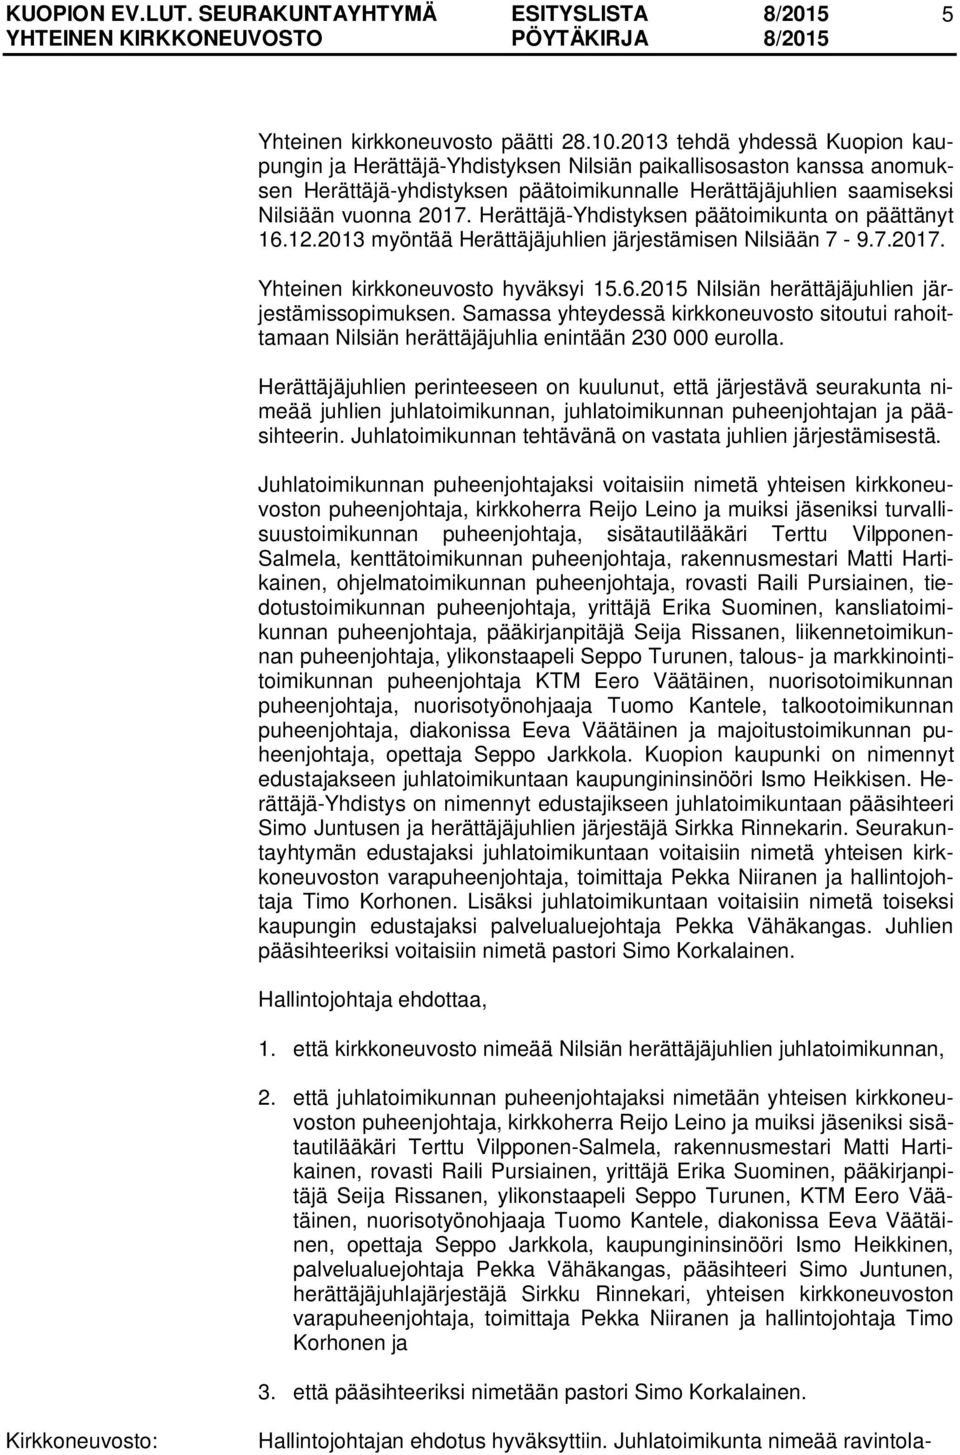 Herättäjä-Yhdistyksen päätoimikunta on päättänyt 16.12.2013 myöntää Herättäjäjuhlien järjestämisen Nilsiään 7-9.7.2017. Yhteinen kirkkoneuvosto hyväksyi 15.6.2015 Nilsiän herättäjäjuhlien järjestämissopimuksen.